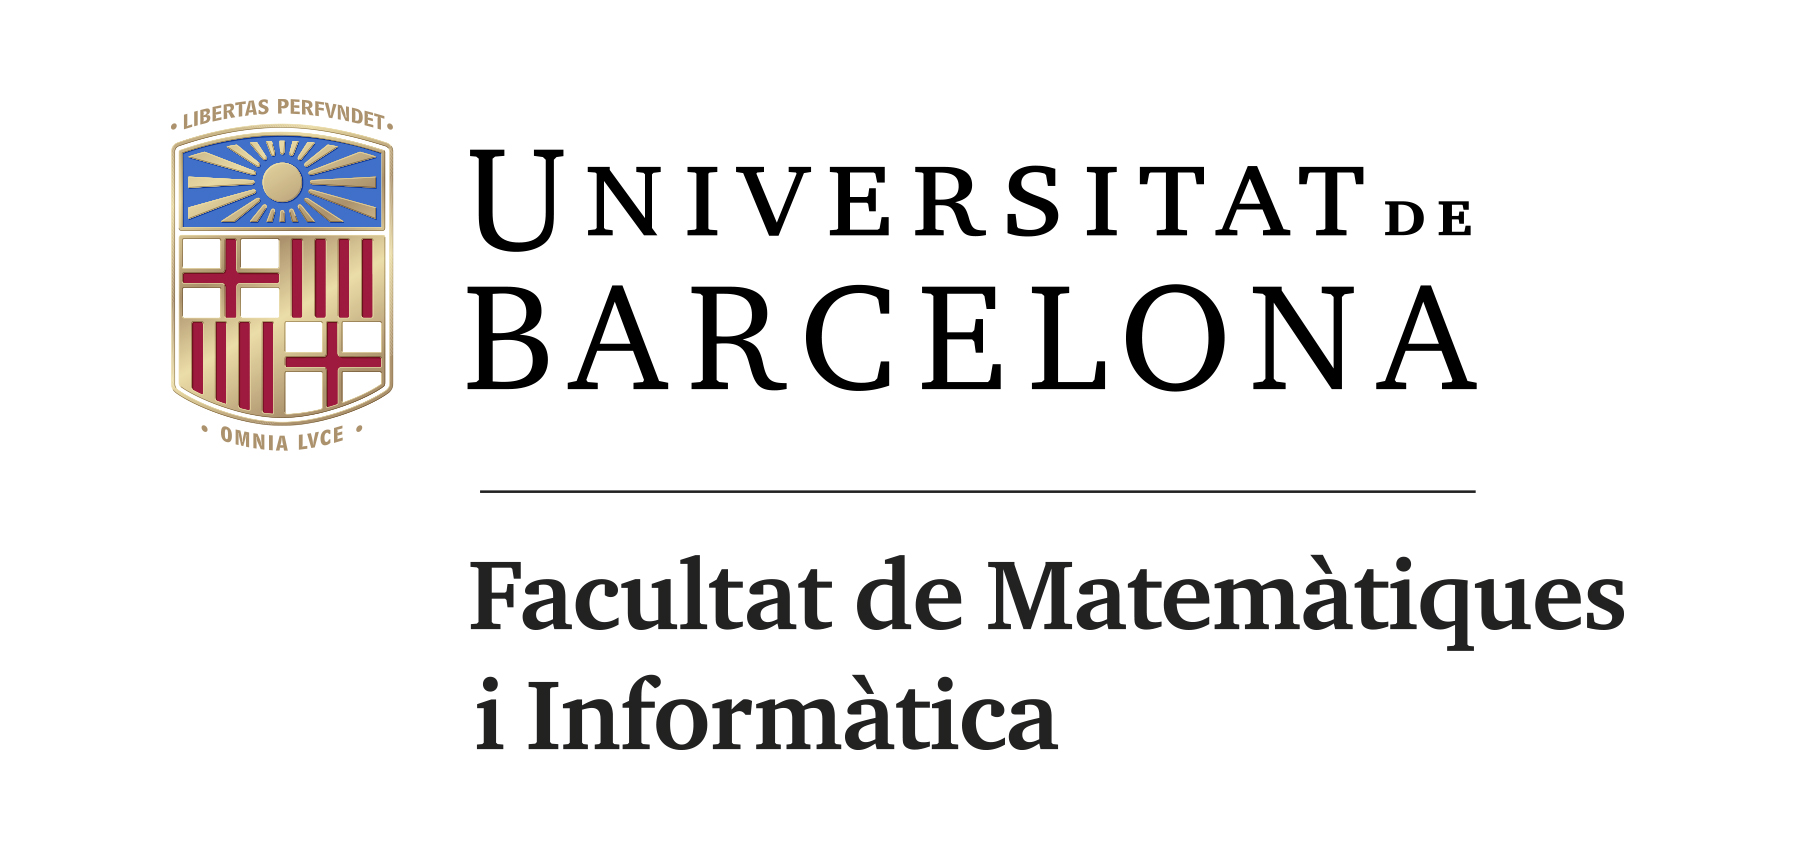 Facultat de Matemàtiques i Informàtica - UB